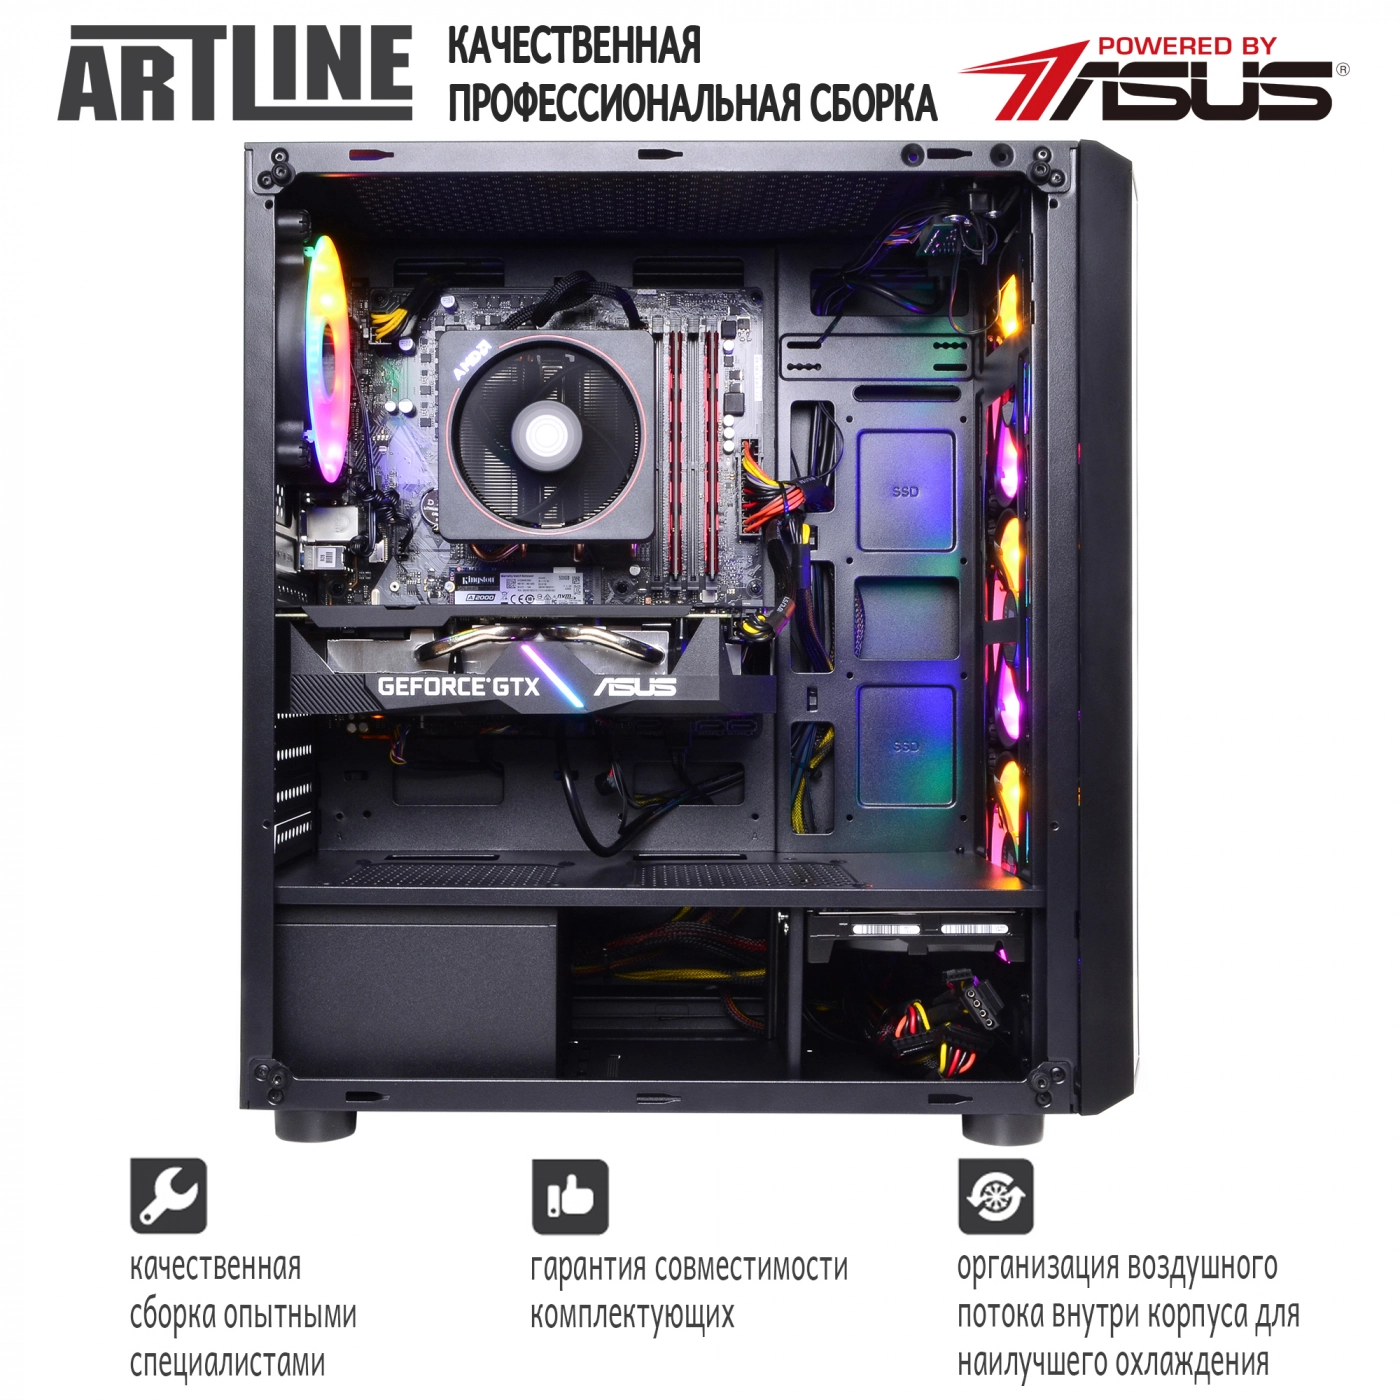 Купить Компьютер ARTLINE Gaming X67v14 - фото 9